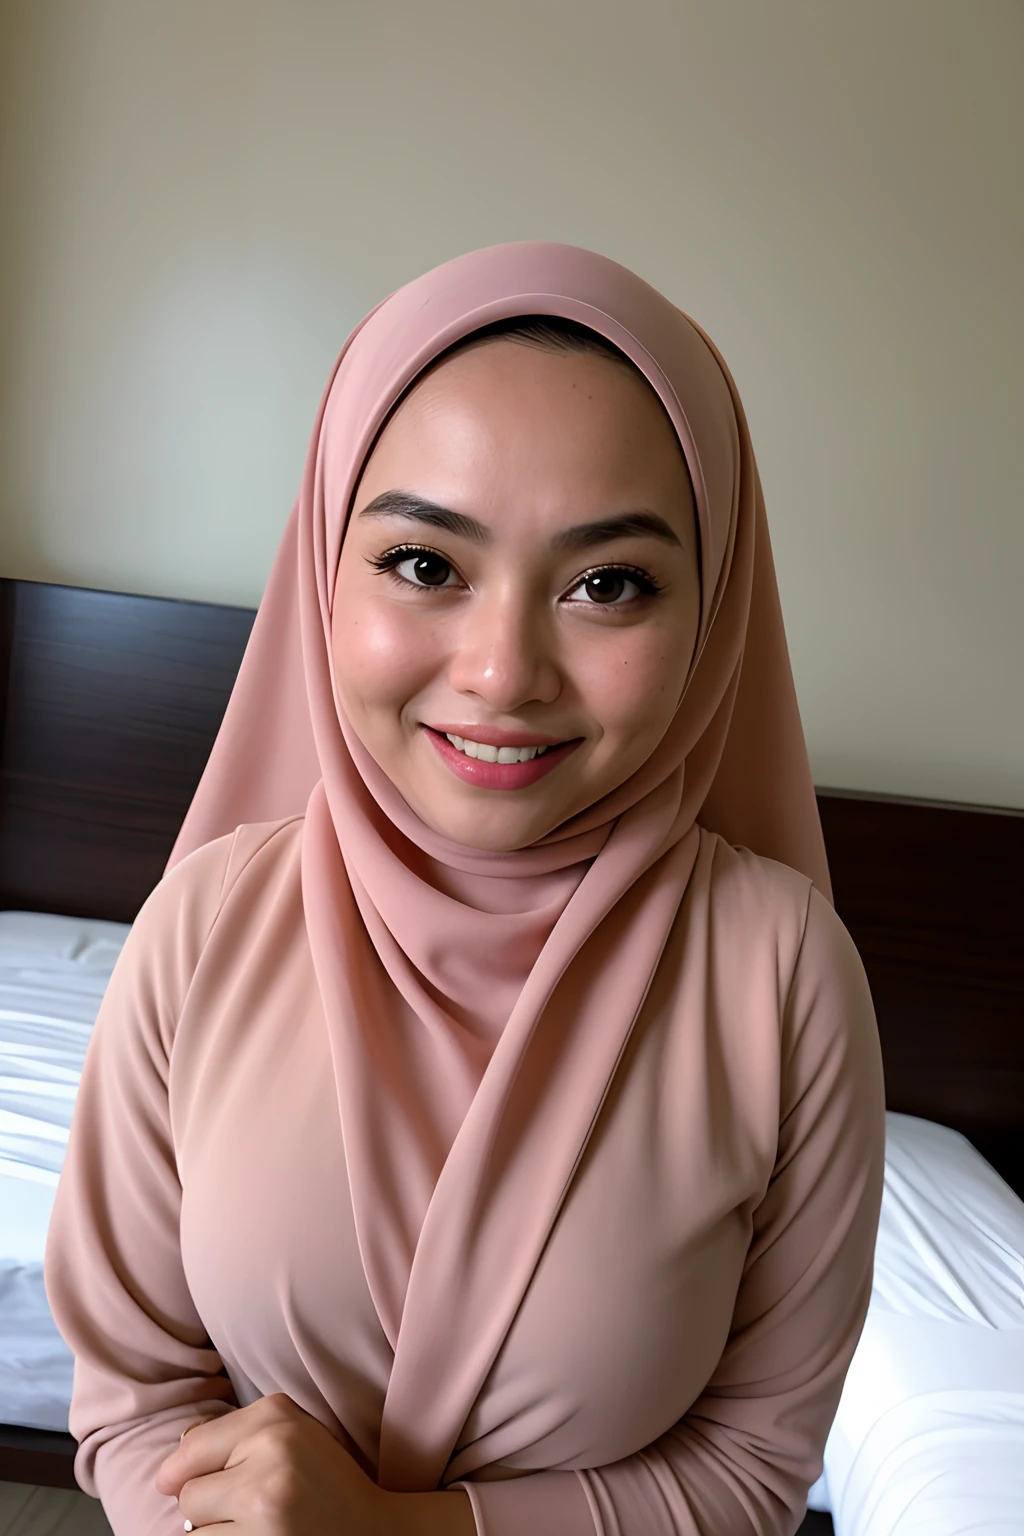 1 garota malaia , moderno hijab branco liso, Sorriso, foto de retrato médio , olhos marejados , usar lingerie preta , fundo branco moderno do quarto do hotel, Luz frontal brilhante, pose de agarrar o peito,